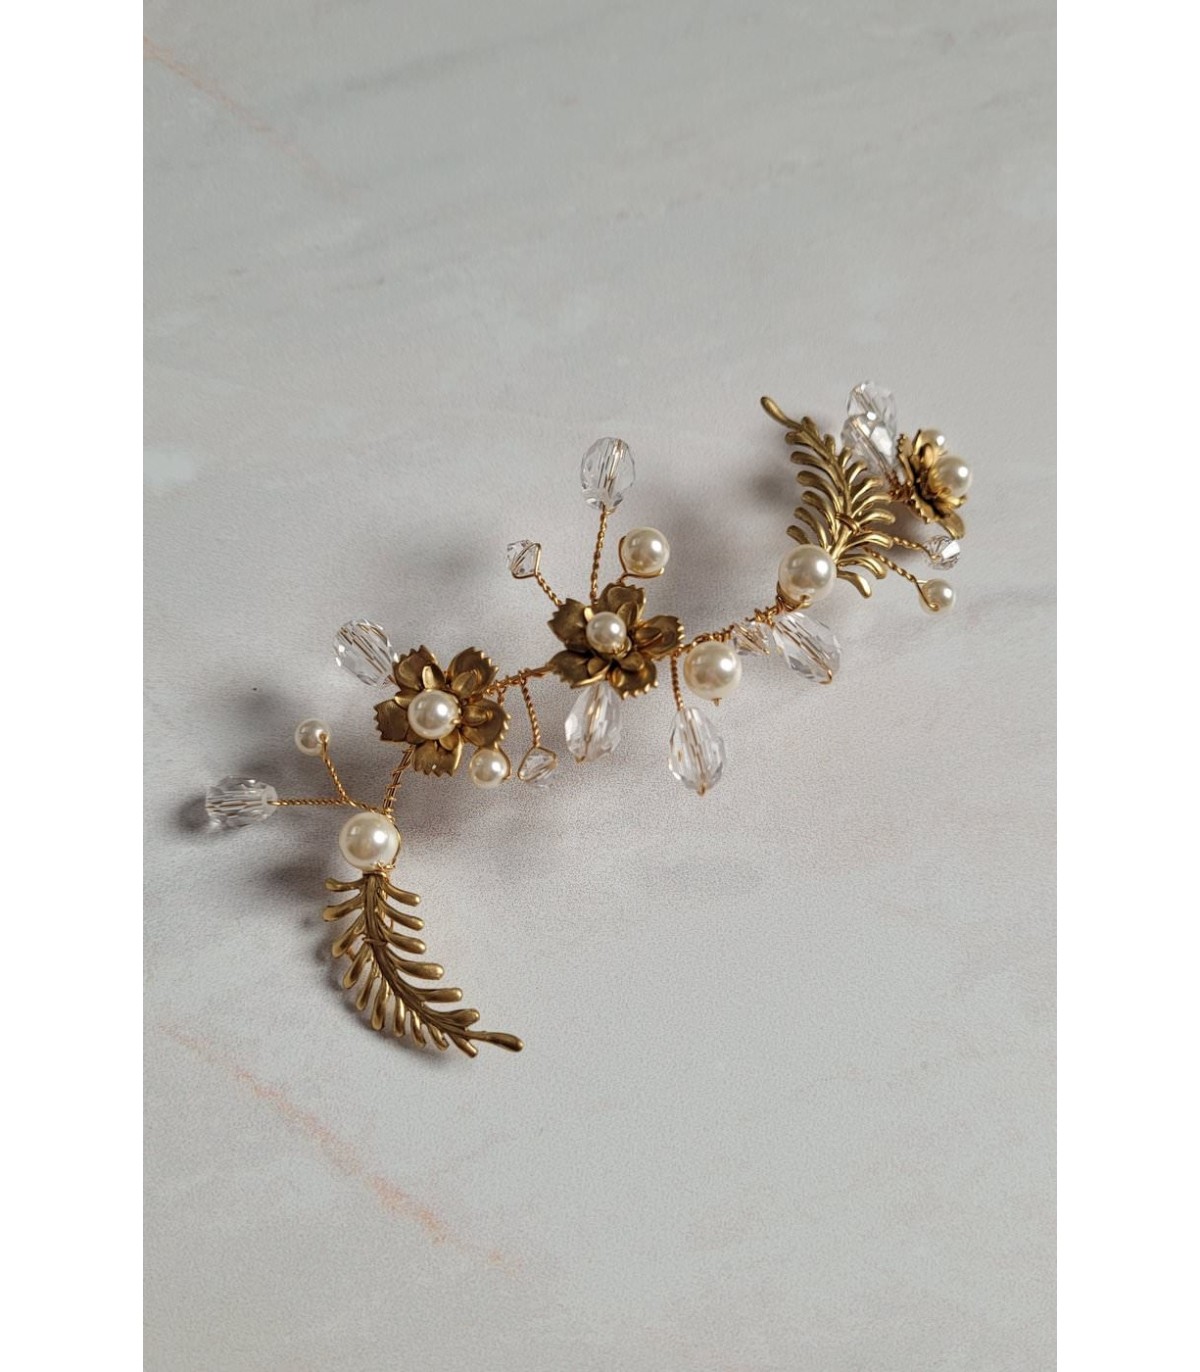 Ornement de cheveux Palmyre bohême chic pour la mariée, avec fleurs et feuilles dorées, perles et cristal.